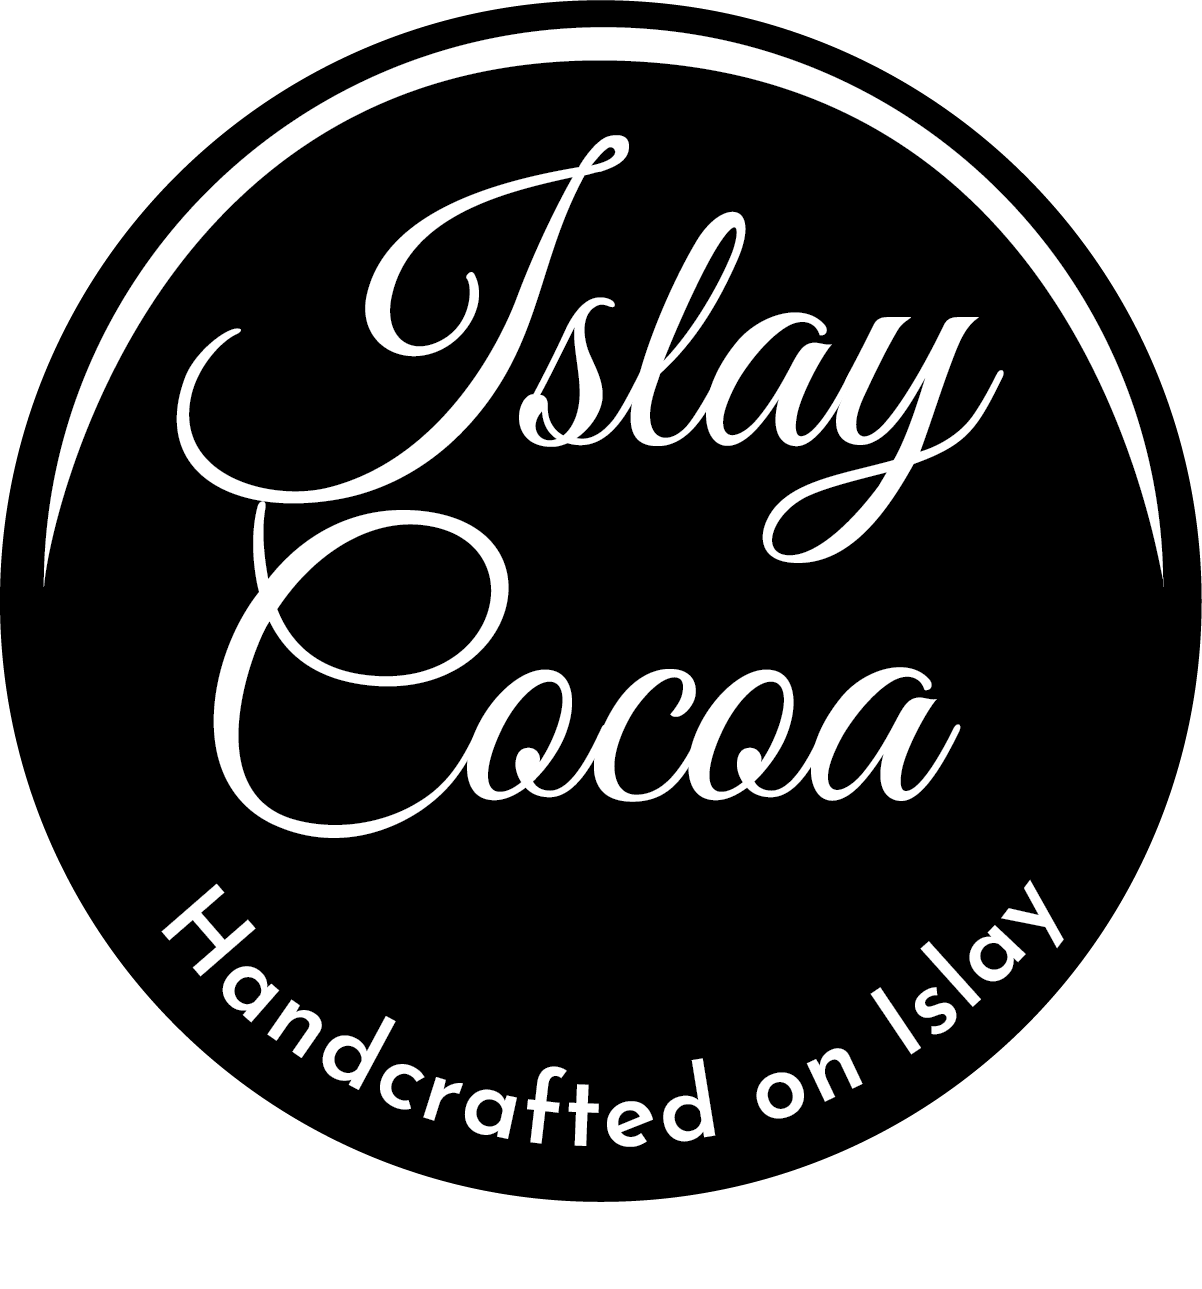 Islay Cocoa